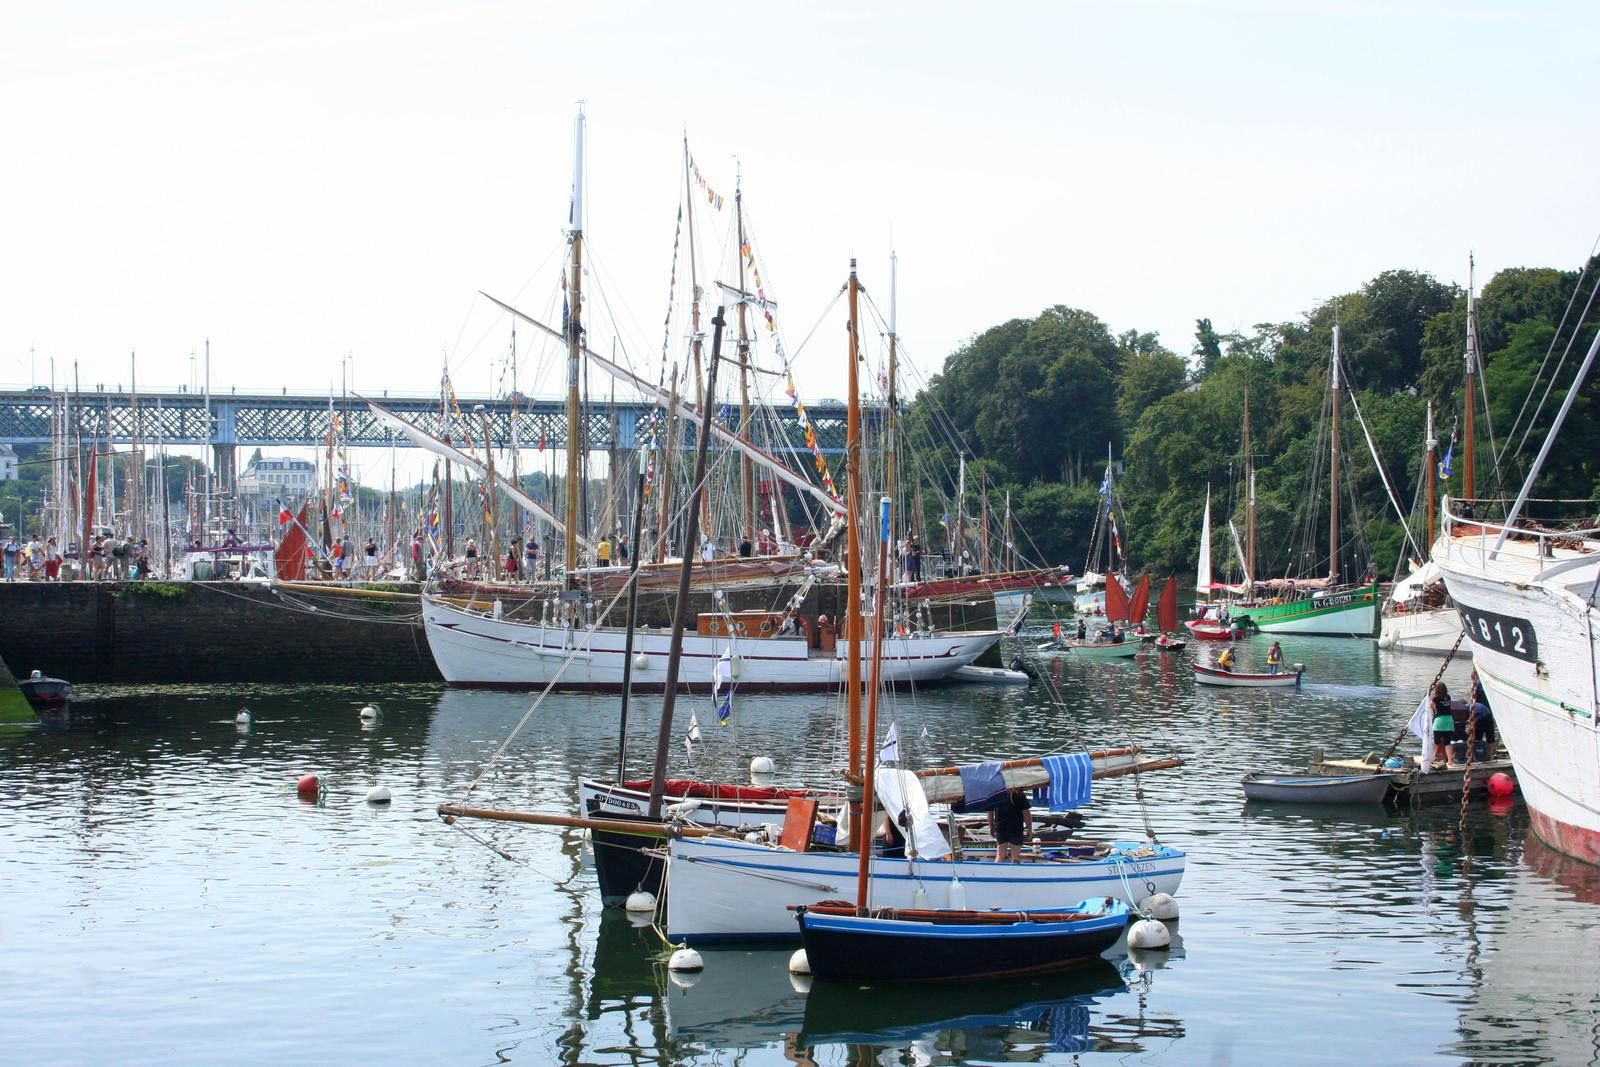 244 - Temps Fêtes, Port-Rhu, Festival maritime du 24 au 27 juillet 2014 à Douarnenez,  des centaines de voiliers traditionnels... Finistère en Bretagne. 